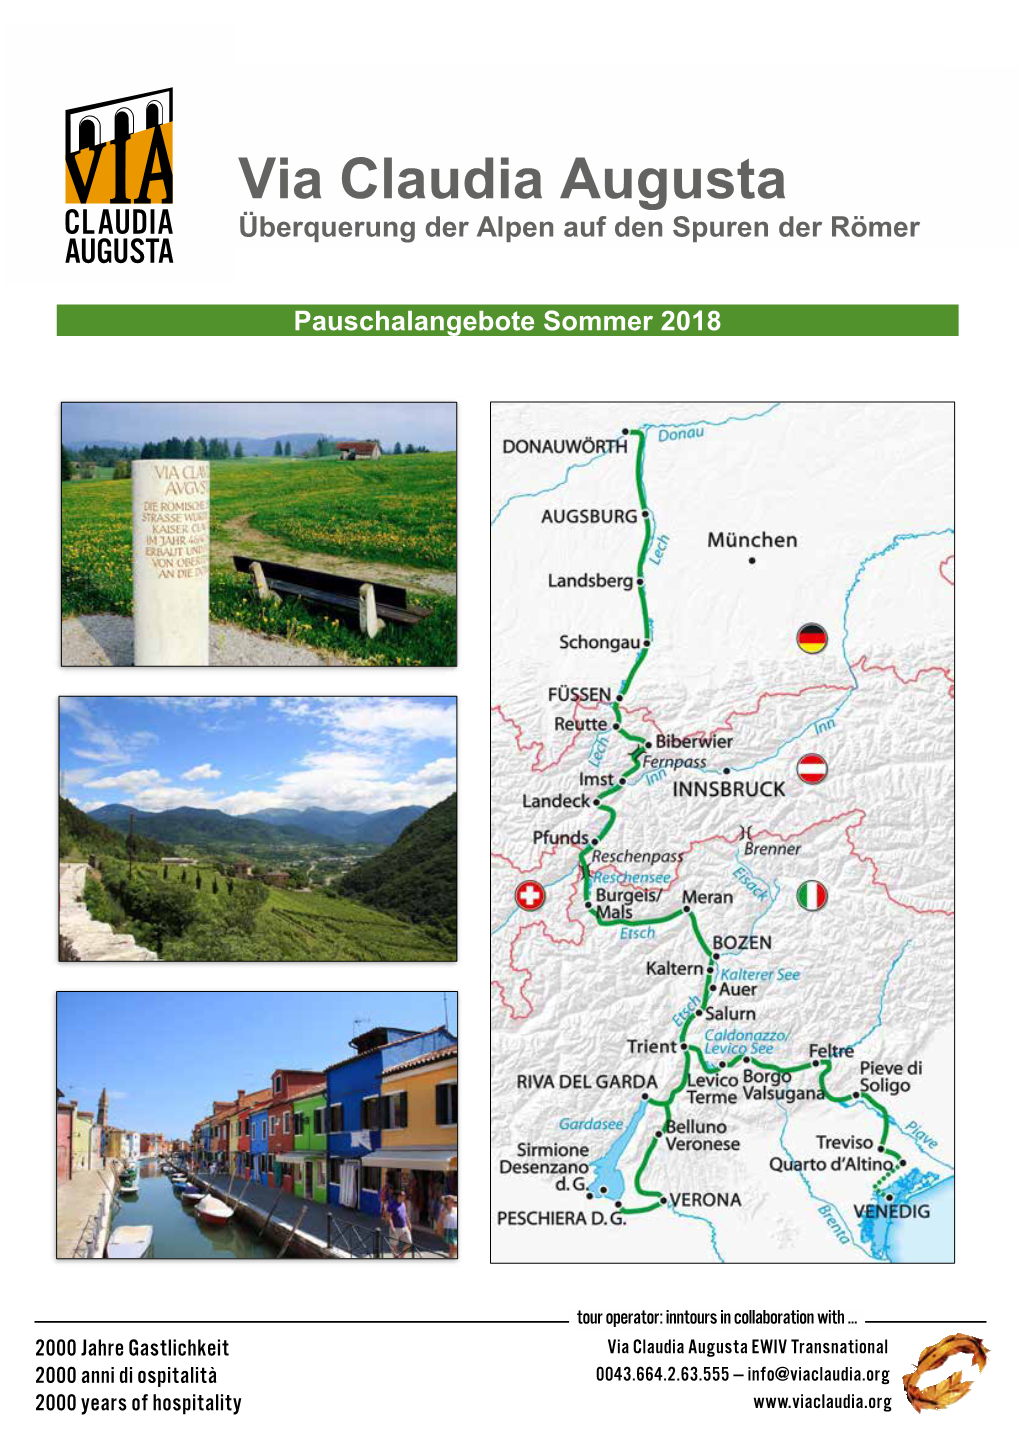 Via Claudia Augusta Überquerung Dervia Alpen Aufclaudia Den Spuren Der Römeraugusta